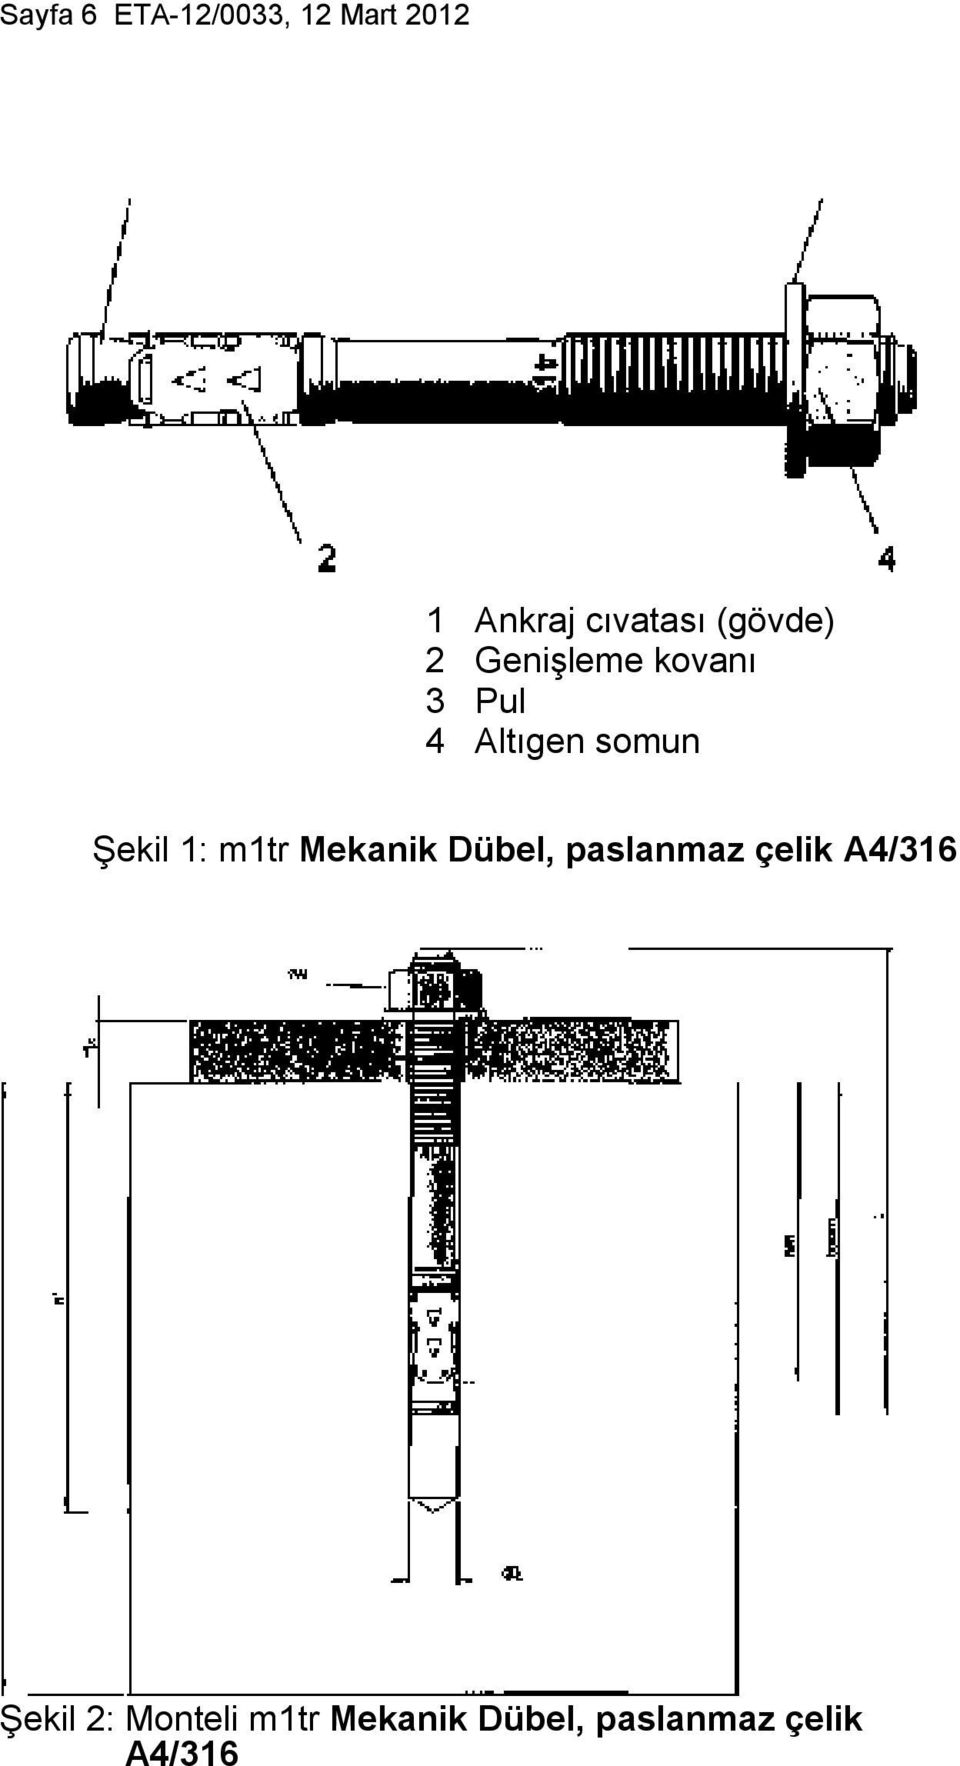 Şekil 1: m1tr Mekanik Dübel, paslanmaz çelik A4/316